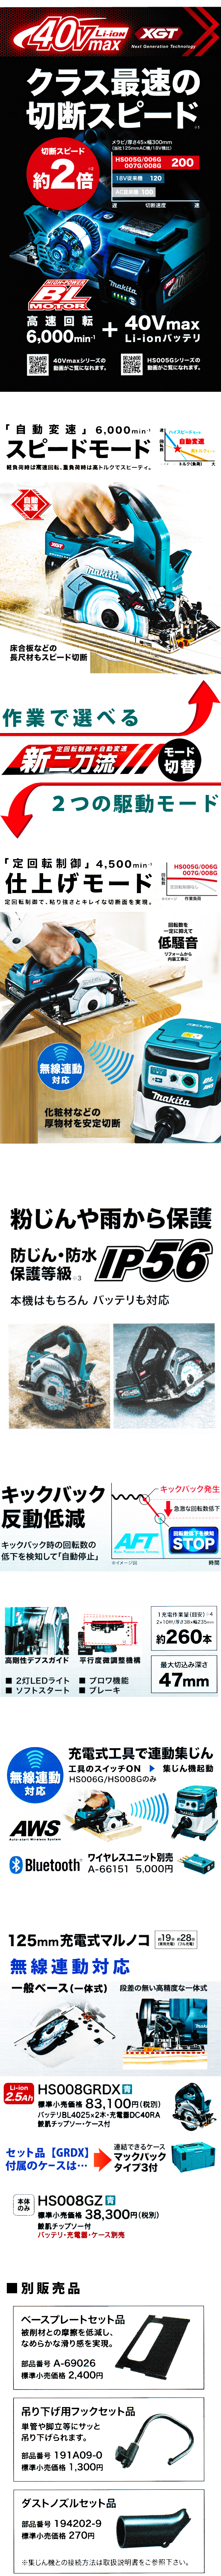 マキタ 125mm充電式丸ノコ HS008G【一般ベース/無線連動対応】